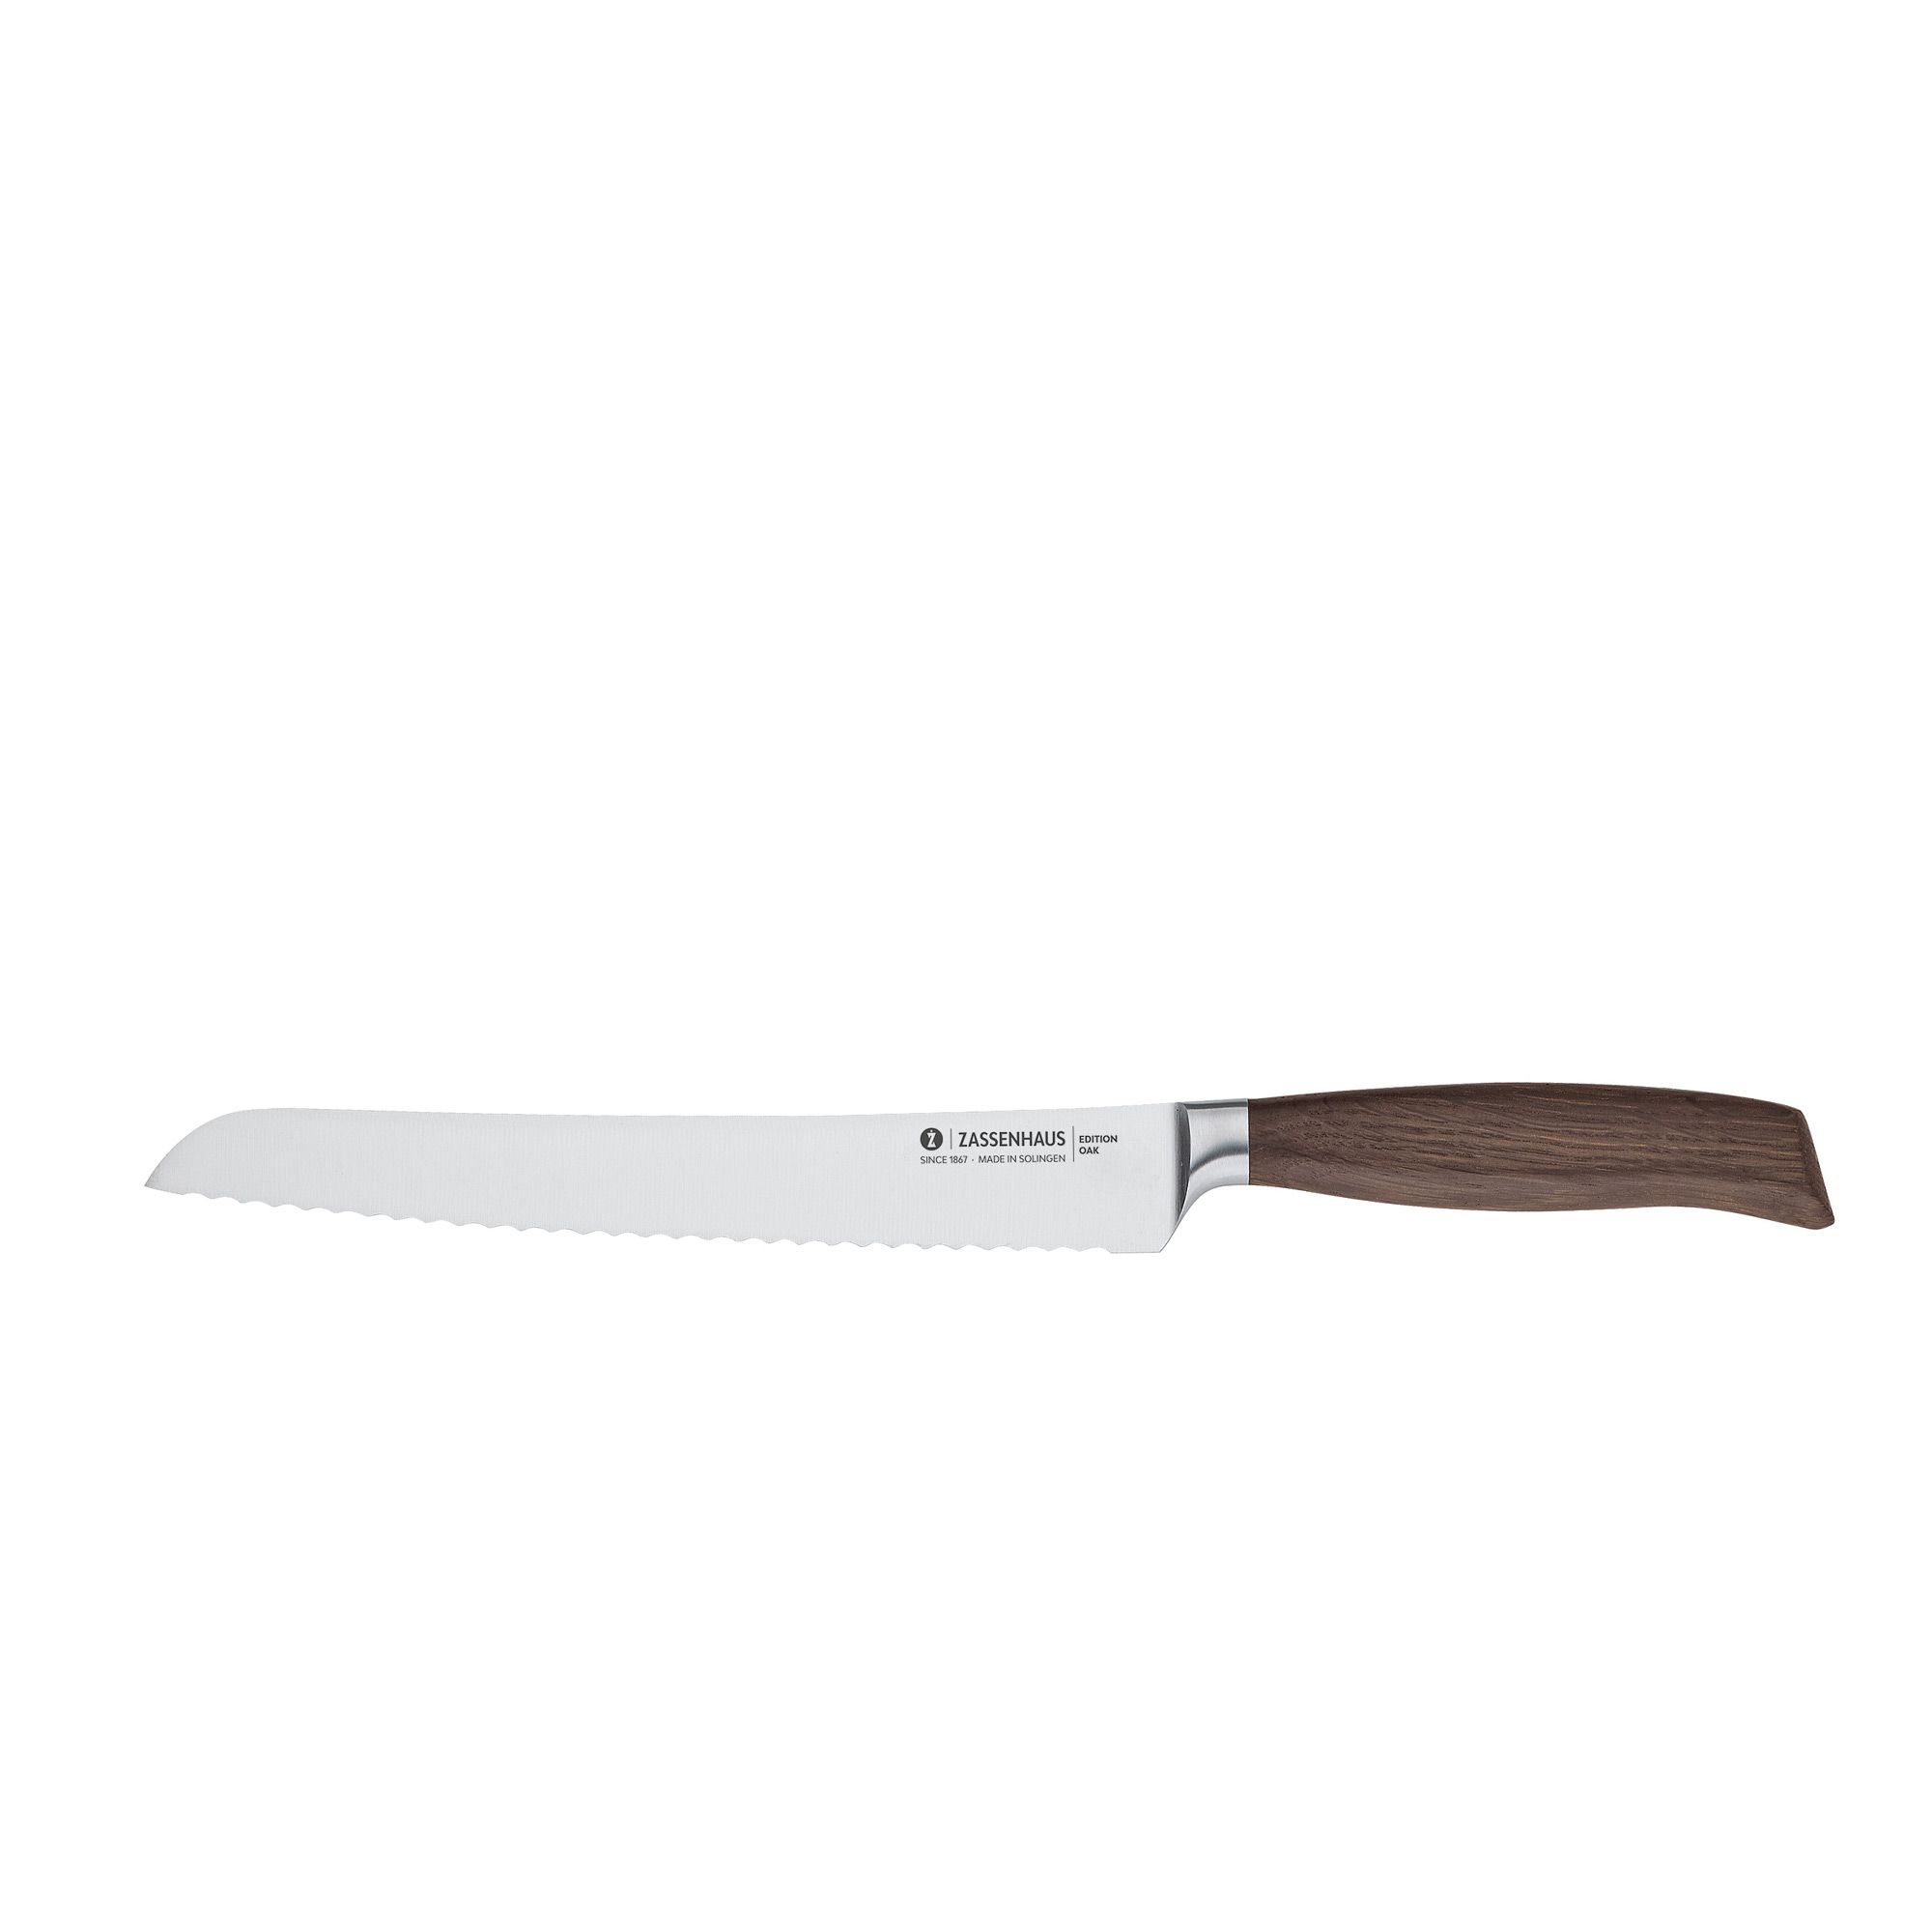 Zassenhaus - bread knife 22 cm - EDITION OAK